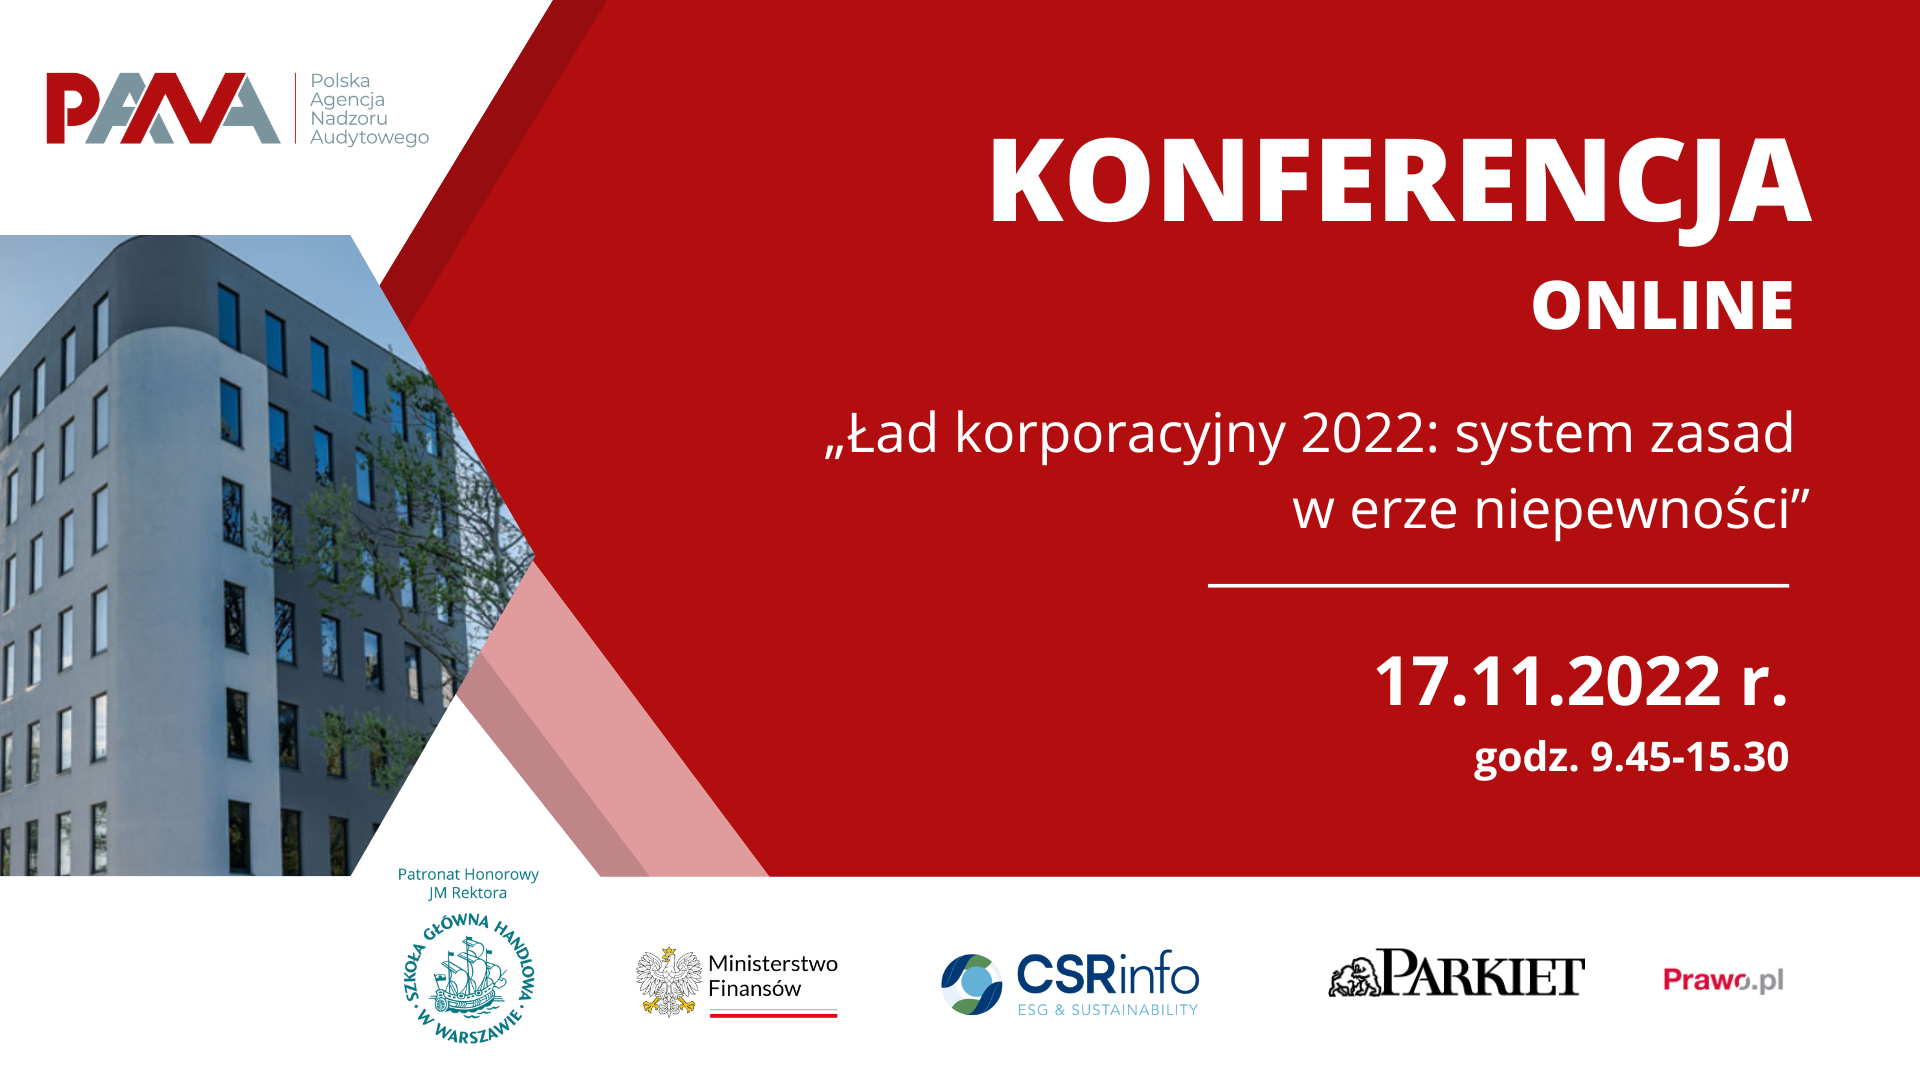 „Ład korporacyjny 2022: system zasad w erze niepewności” - zaproszenie na konferencję edukacyjną Polskiej Agencji Nadzoru Audytowego